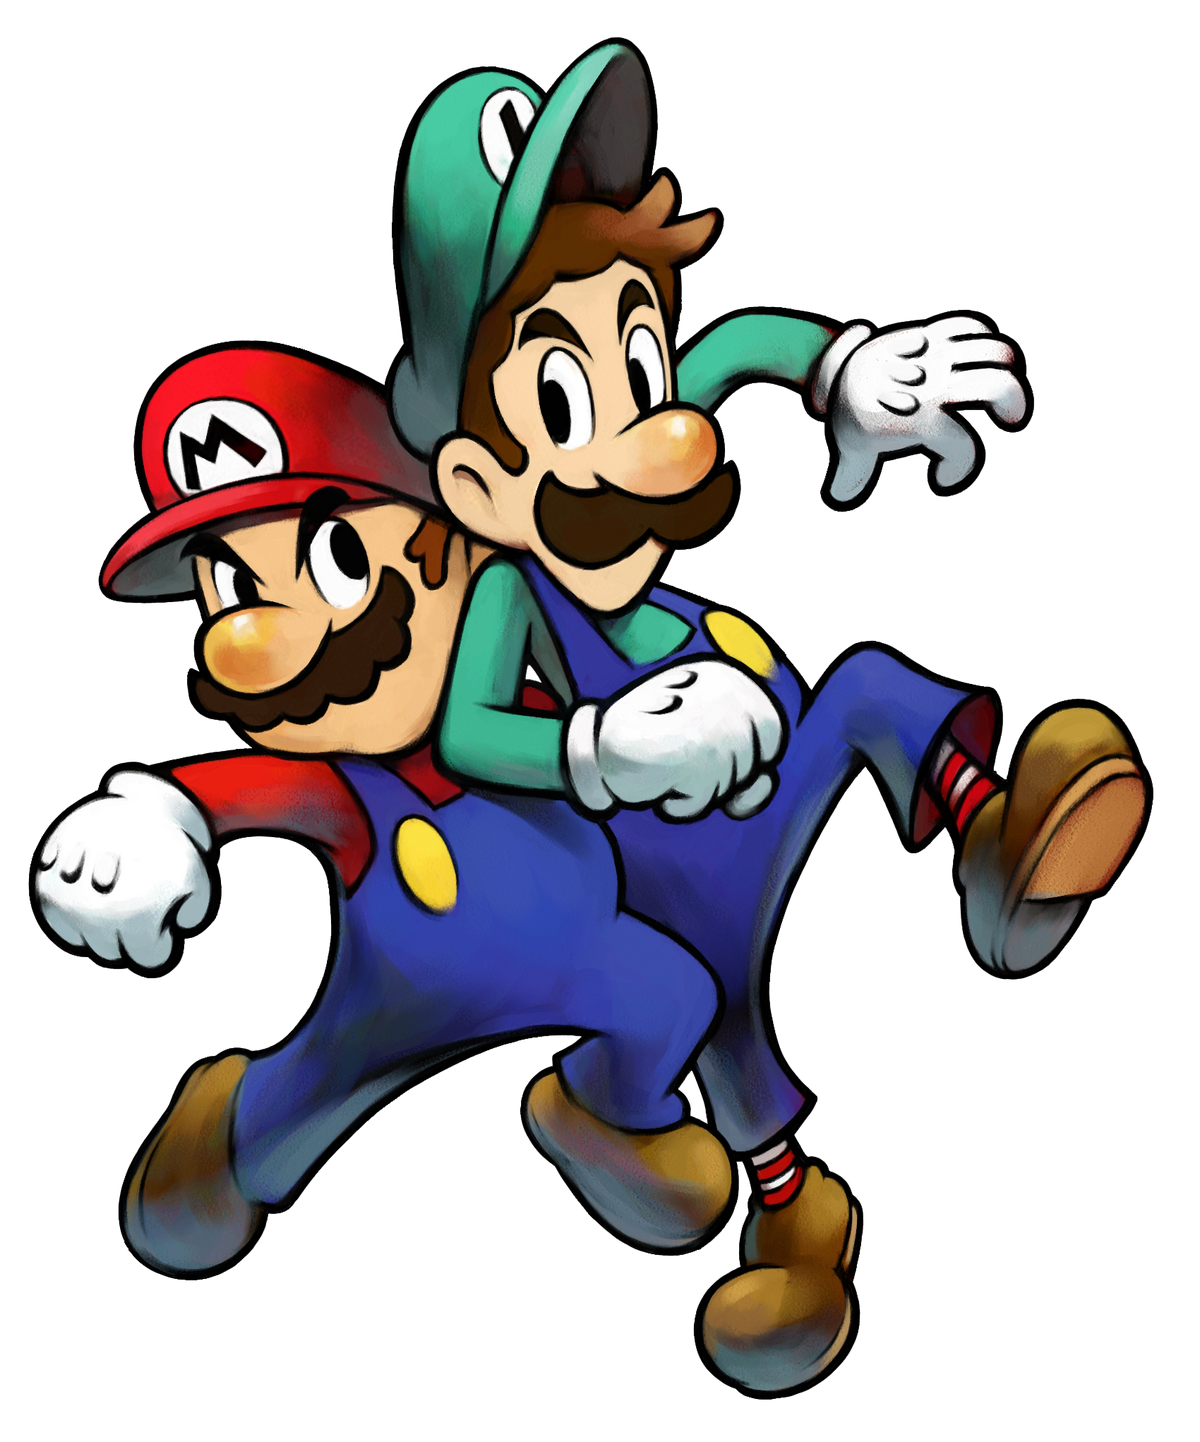 cerebro Nosotros mismos Contagioso Galería: Mario & Luigi: Superstar Saga | Super Mario Wiki | Fandom